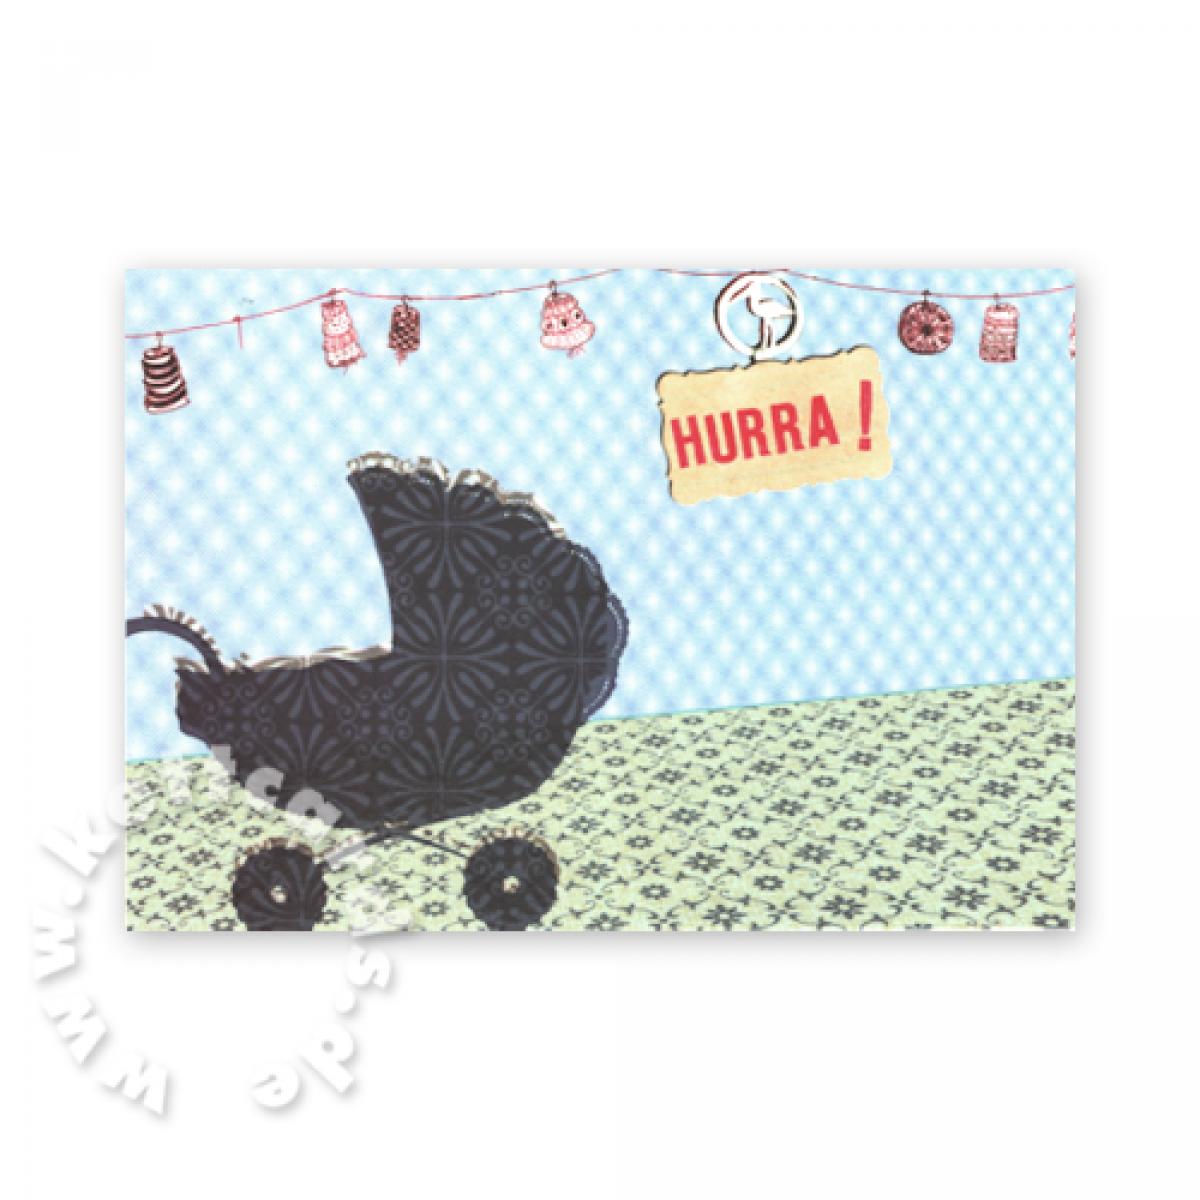 Baby-Postkarte: Kinderwagen + Hurra!